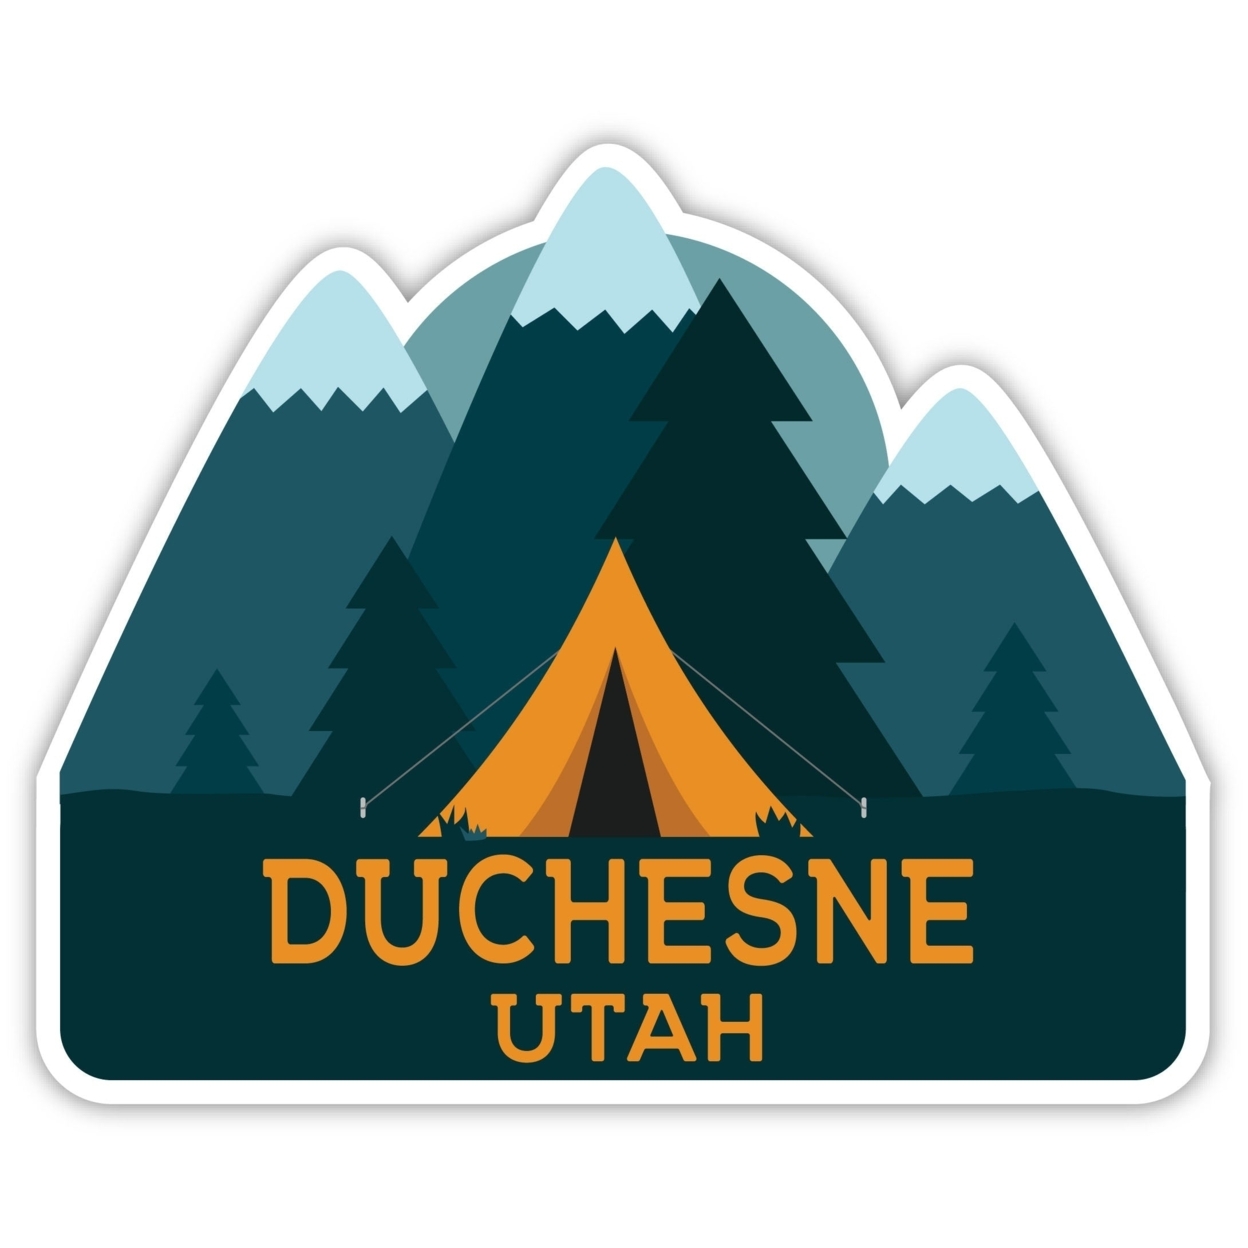 Duchesne Utah Souvenir Decorative Stickers (Choose Theme And Size) - Single Unit, 10-Inch, Tent